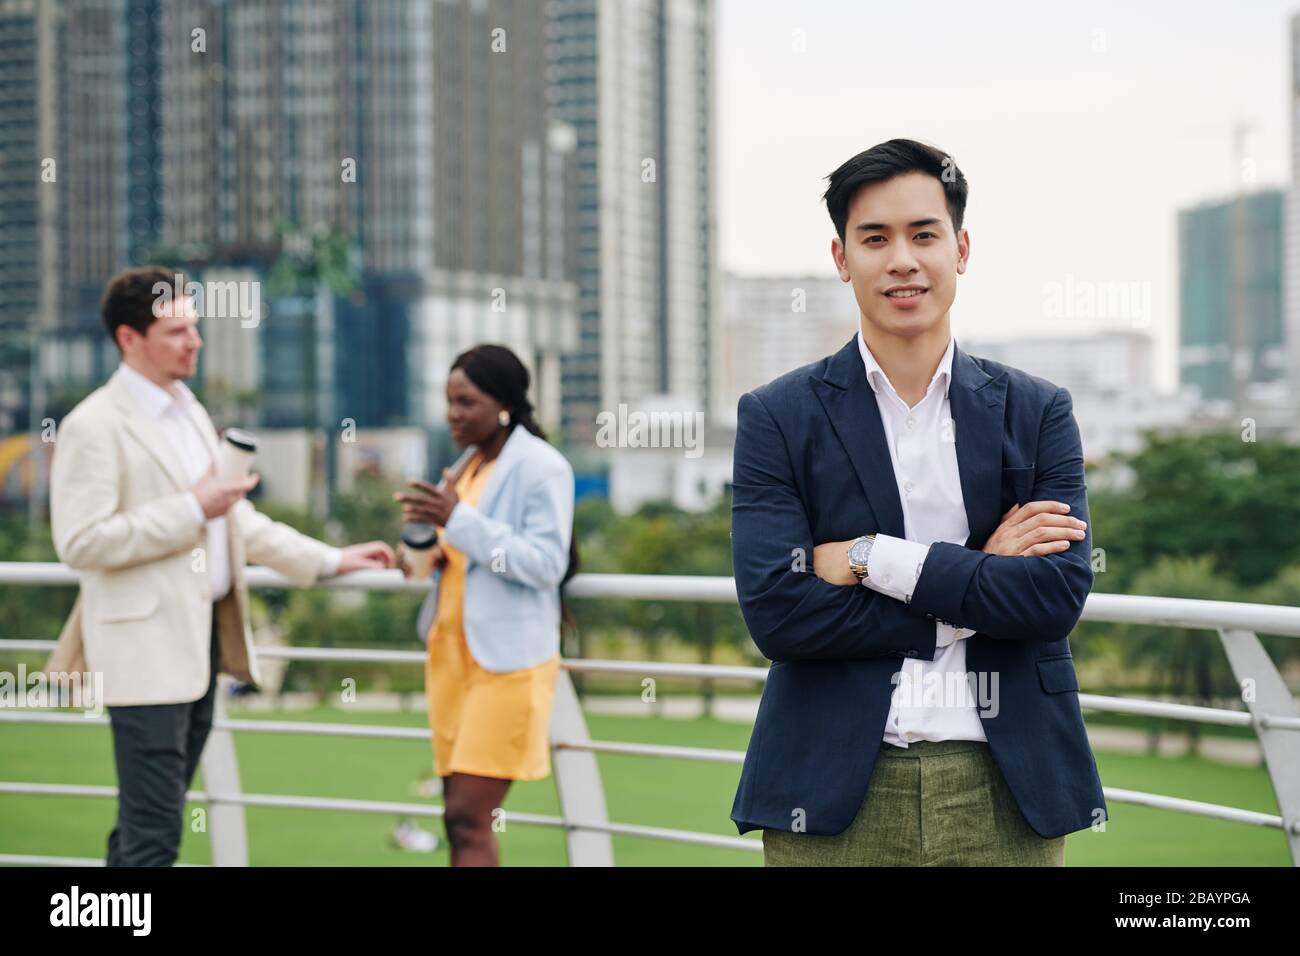 Portrait junger, gutaussehender vietnamesischer Geschäftsmann, der sich über die Arme querte und beim stehen im Freien die Kamera ansah Stockfoto